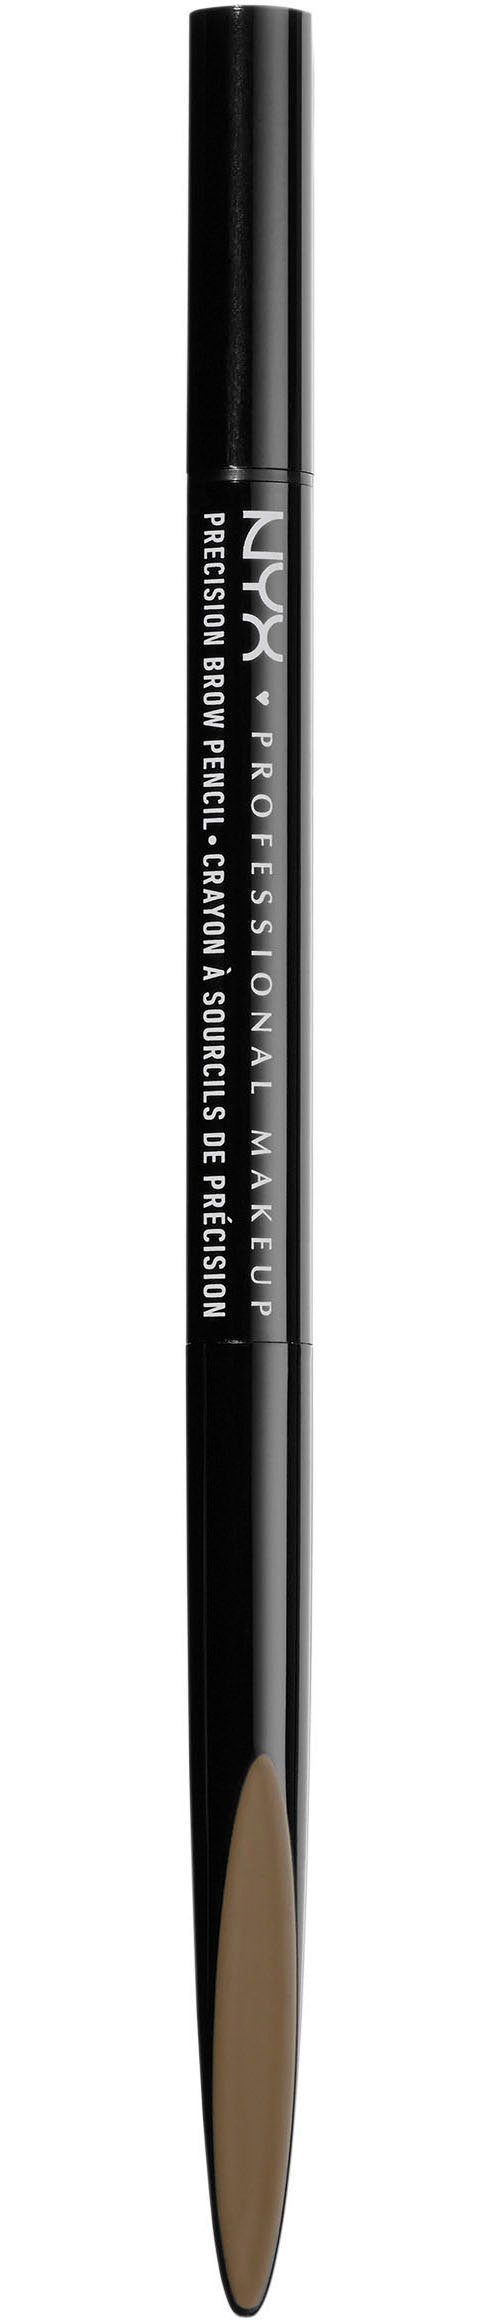 NYX Augenbrauen-Stift Professional Makeup Precision Brow Pencil espresso | Augenbrauen